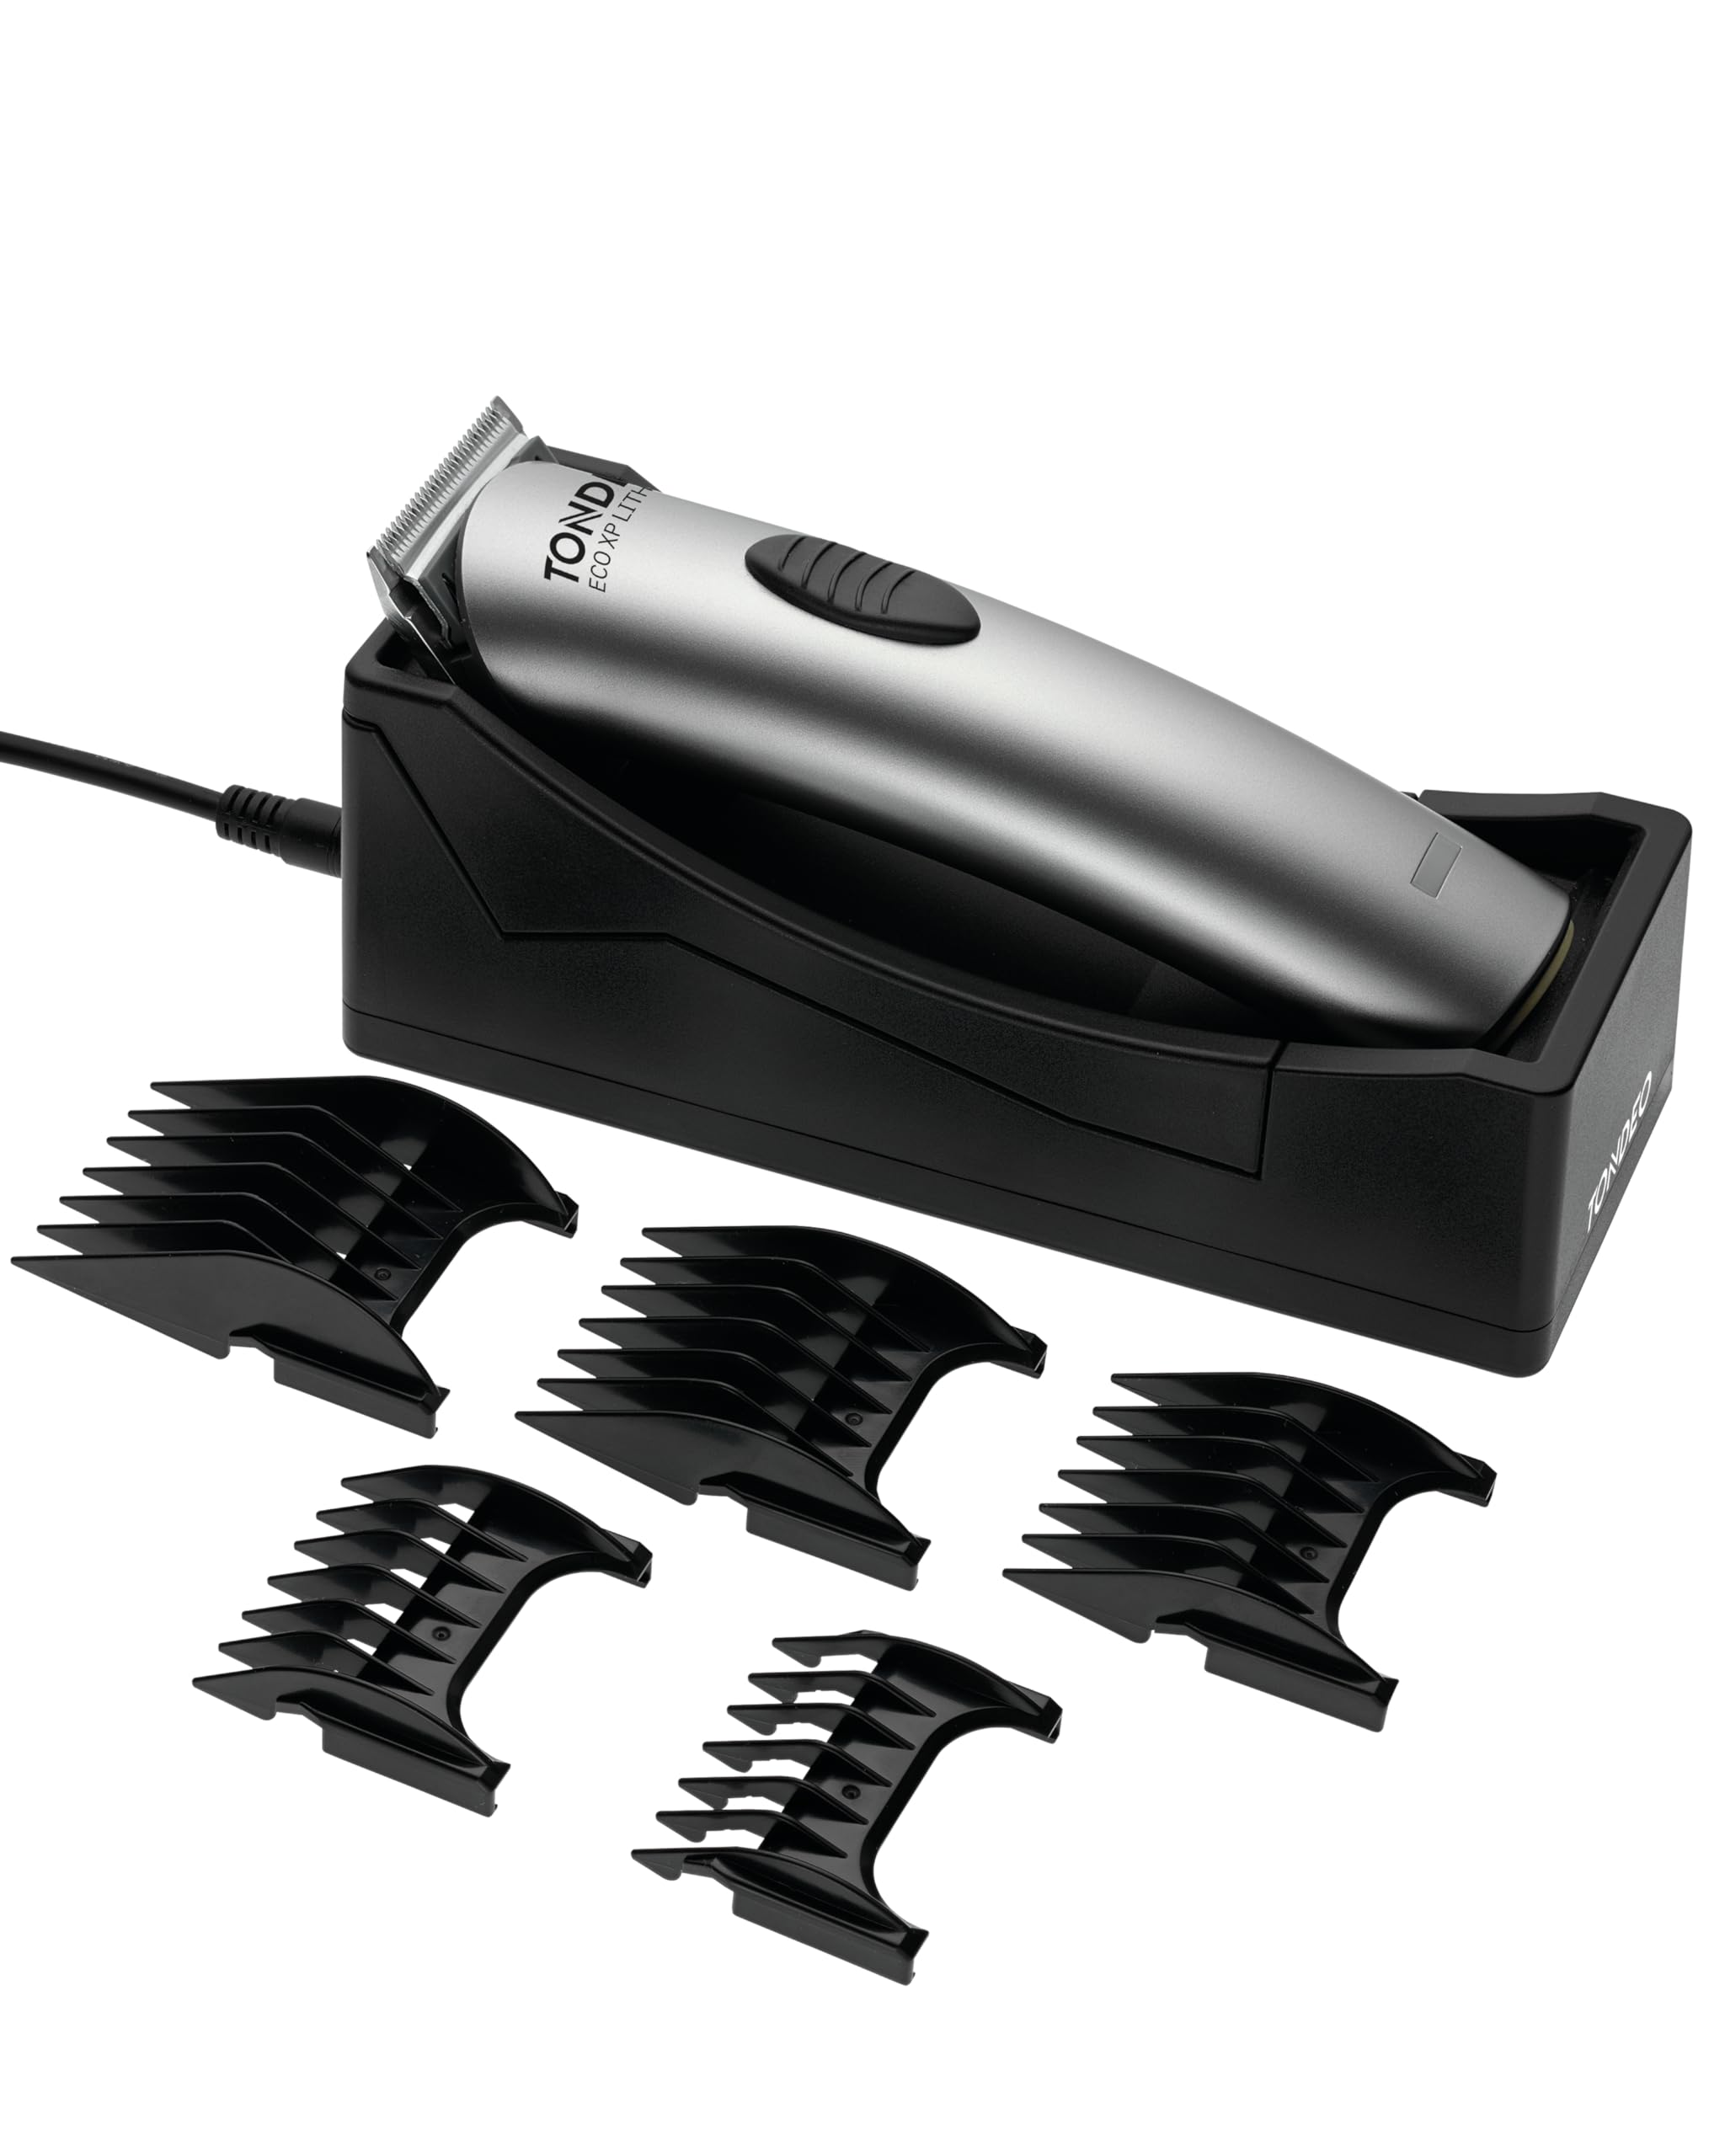 TONDEO Profi Haarschneidemaschine ECO XP LITHIUM SILVER | Haarschneider inklusive Ladestation und Aufsteckkamm für 5 verschiedene Schnittlängen (4/8 / 12/16 / 20mm)